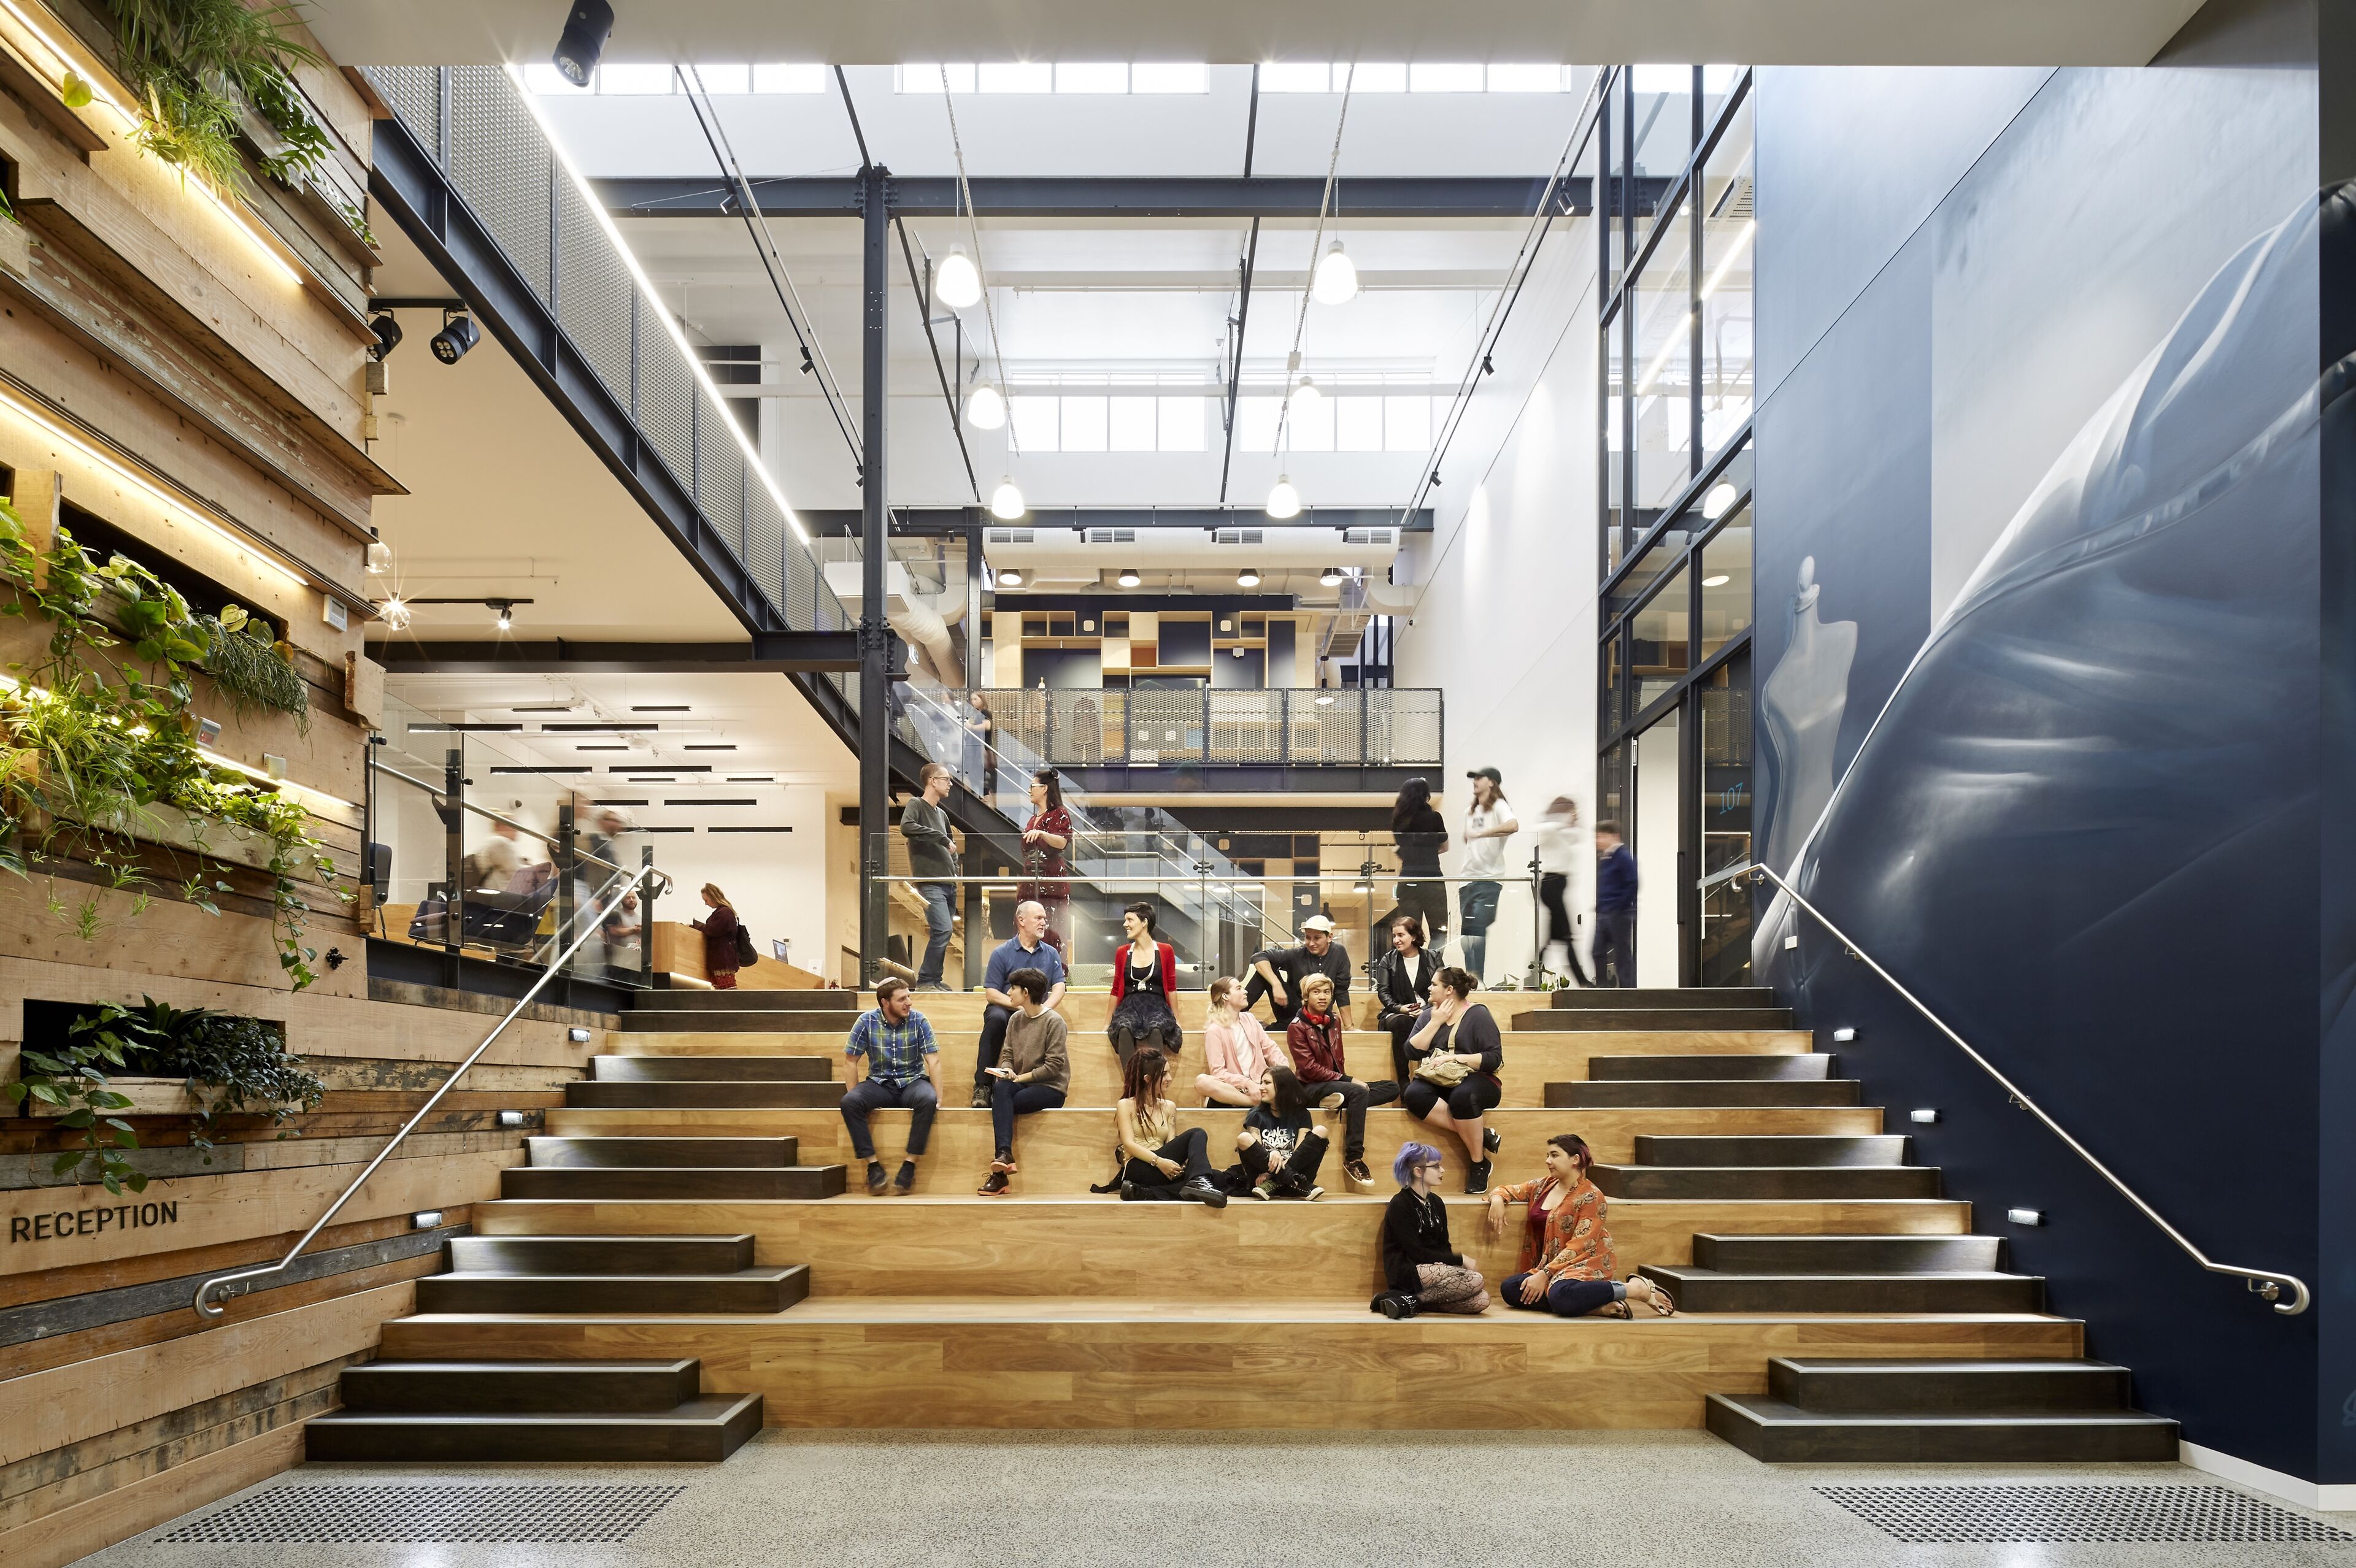 Estudiantes y empleados conversan en las escaleras del anfiteatro de un moderno atrio del campus de LCI en Melbourne, rodeados de vegetación y diseño urbano.